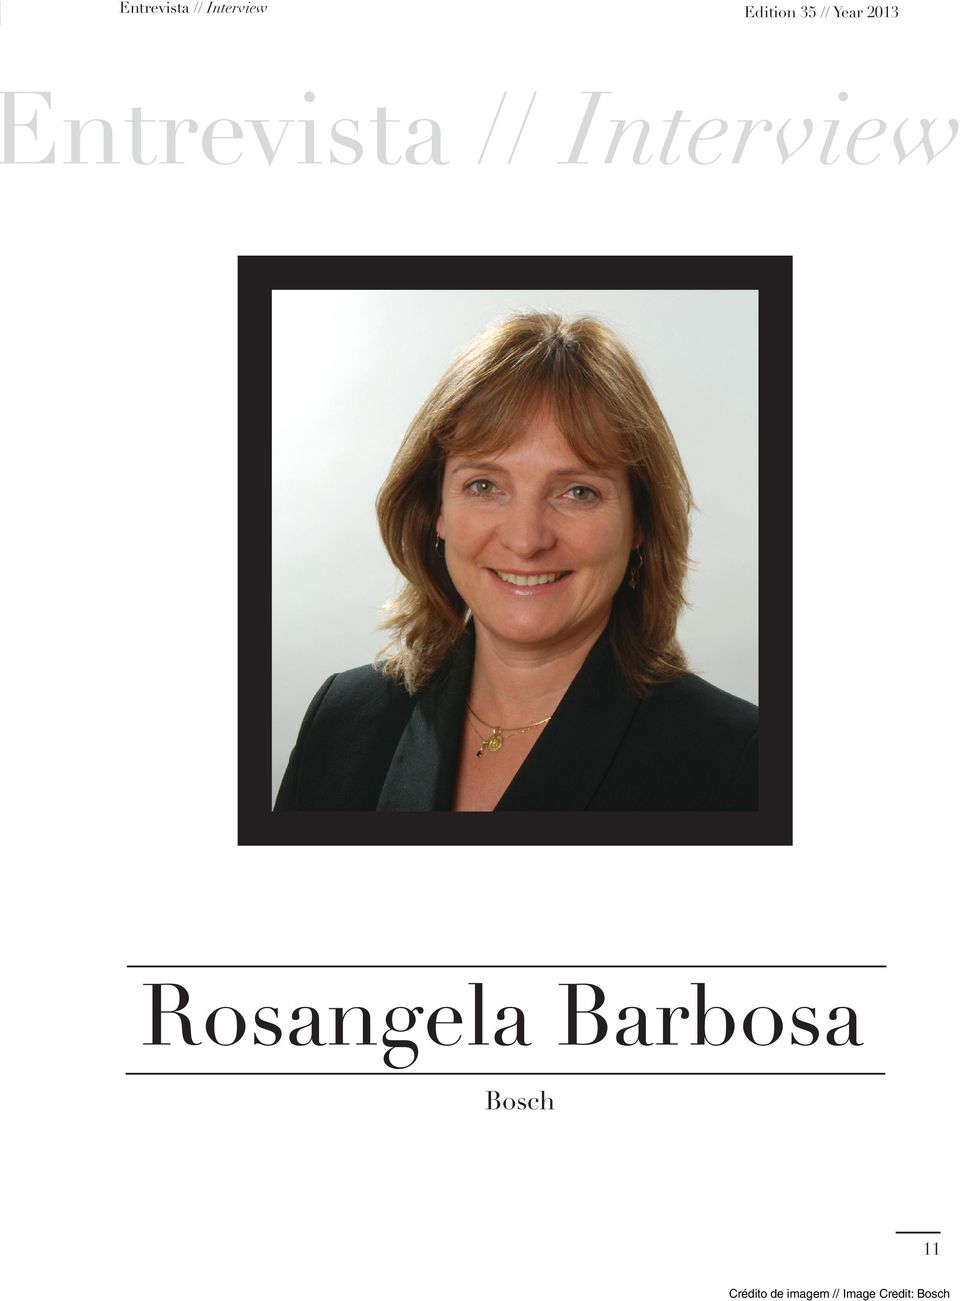 Interview Rosangela Barbosa Bosch